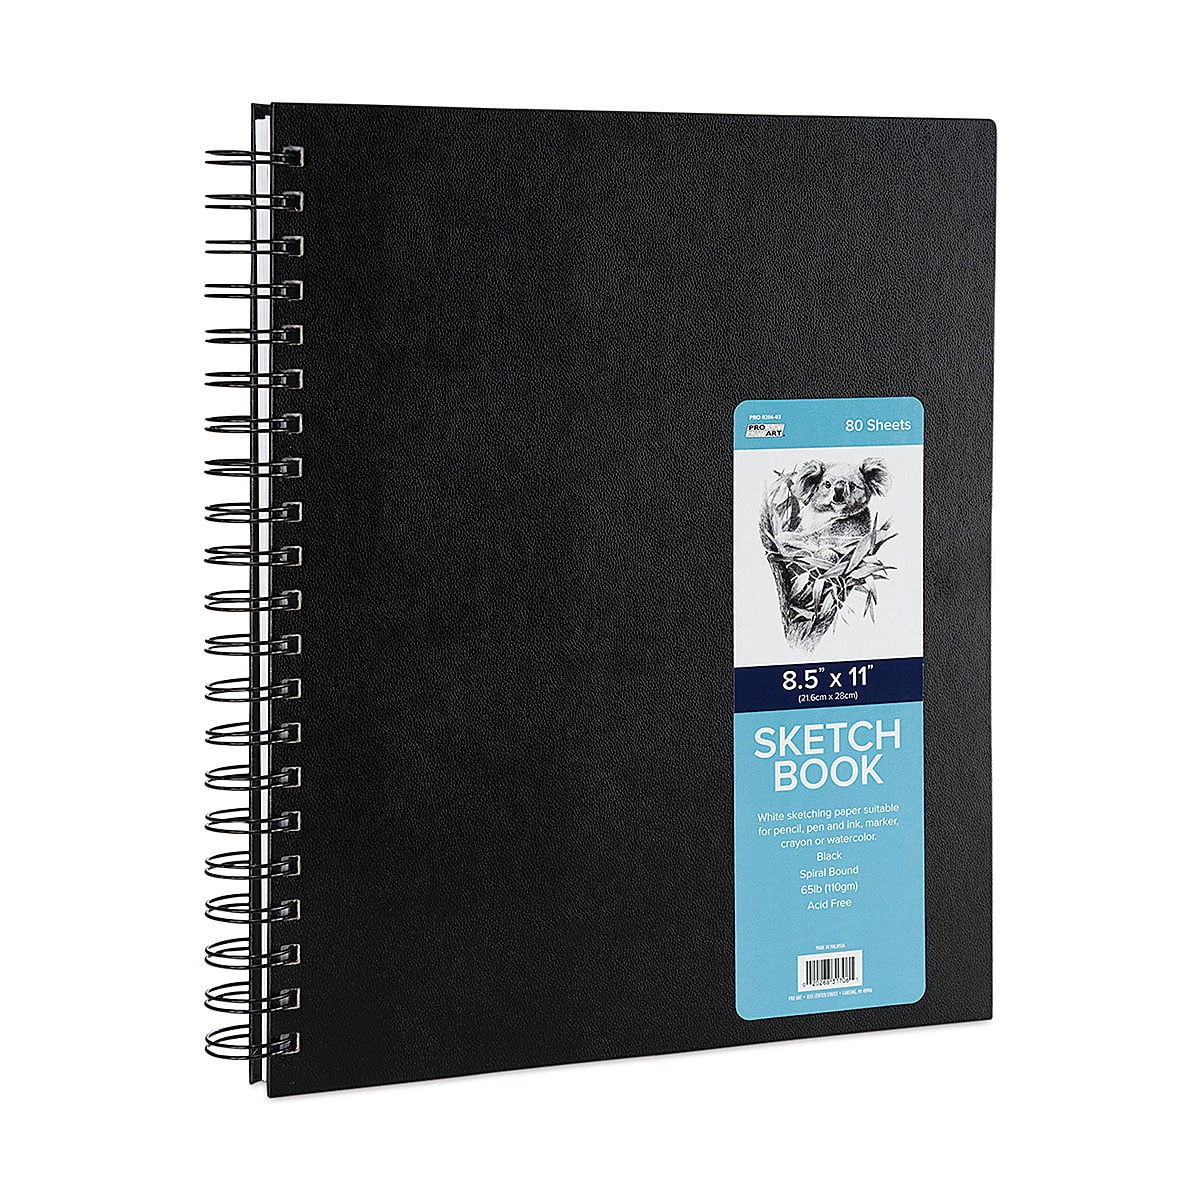 Sketchbook Spiral-Bound Hardcover Black 5.5 x 8.5” - Pack of 3